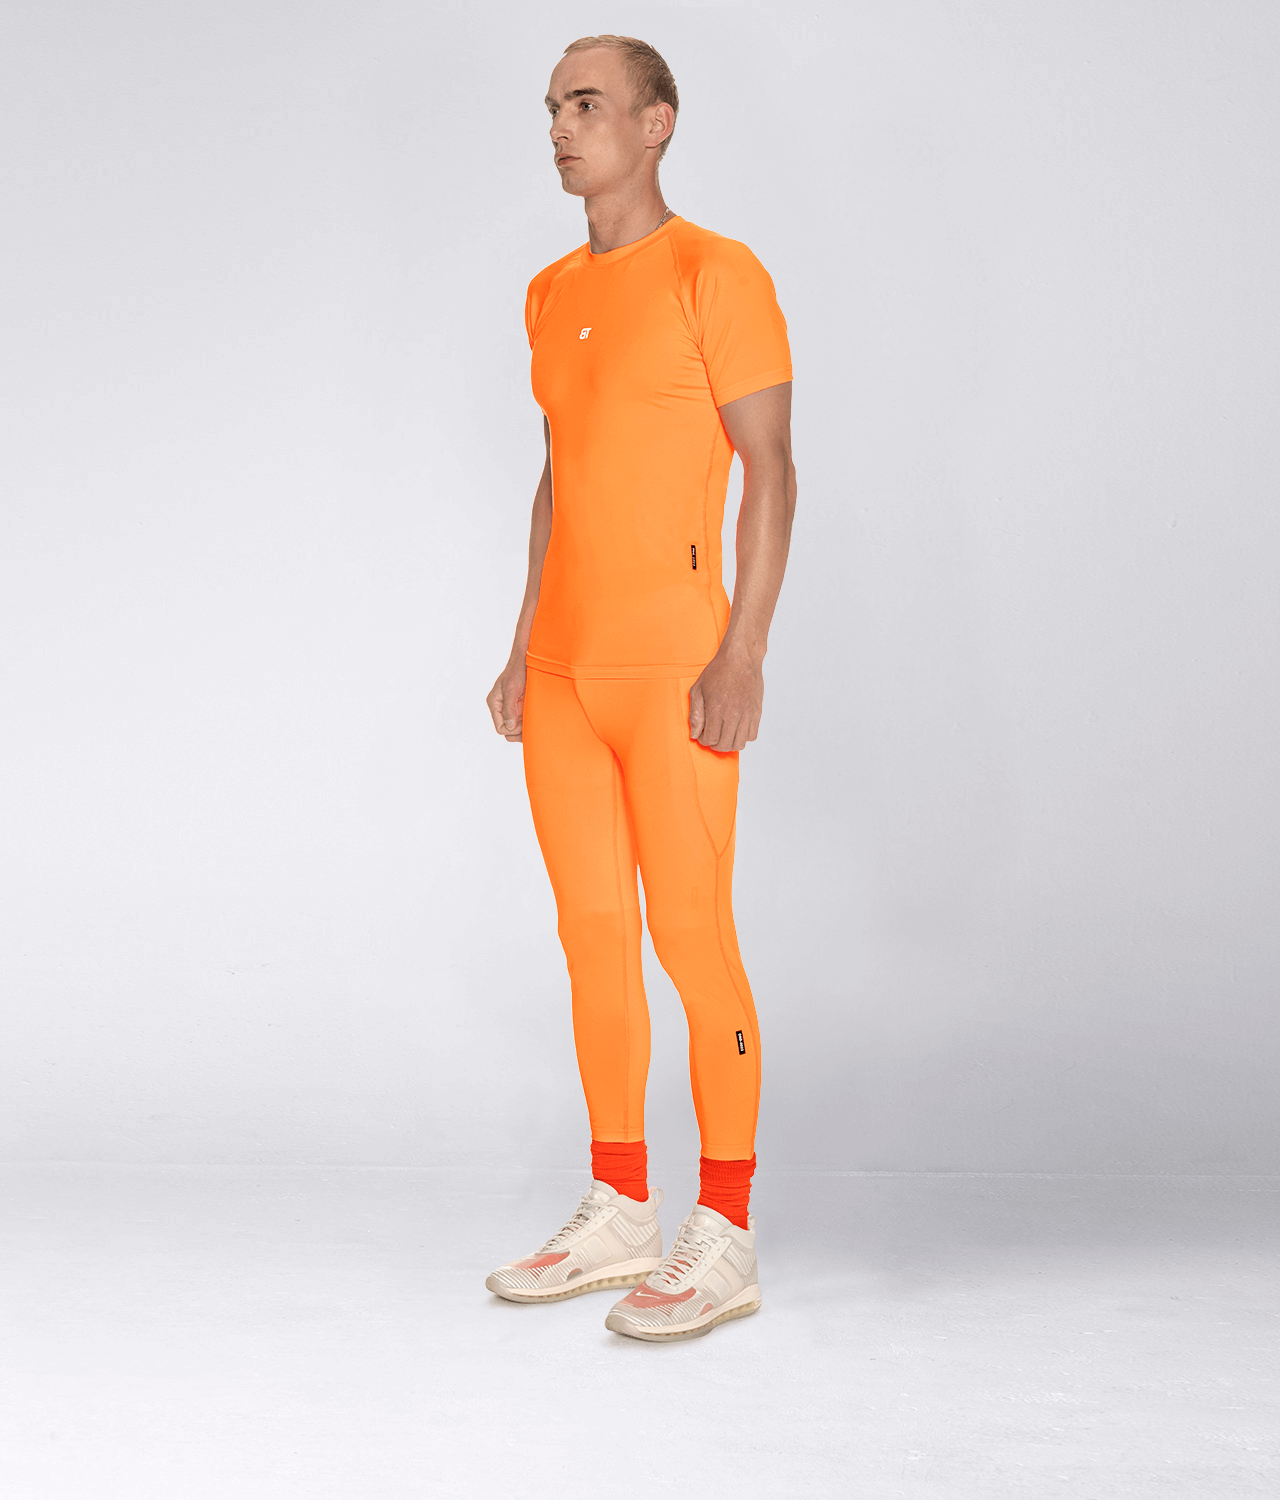 https://www.elitesports.com/cdn/shop/products/born-tough-side-pockets-compression-pants-for-men-orange_5_e5fbc15b-12f0-4a74-ba51-c9fa817f2463.png?v=1643385269